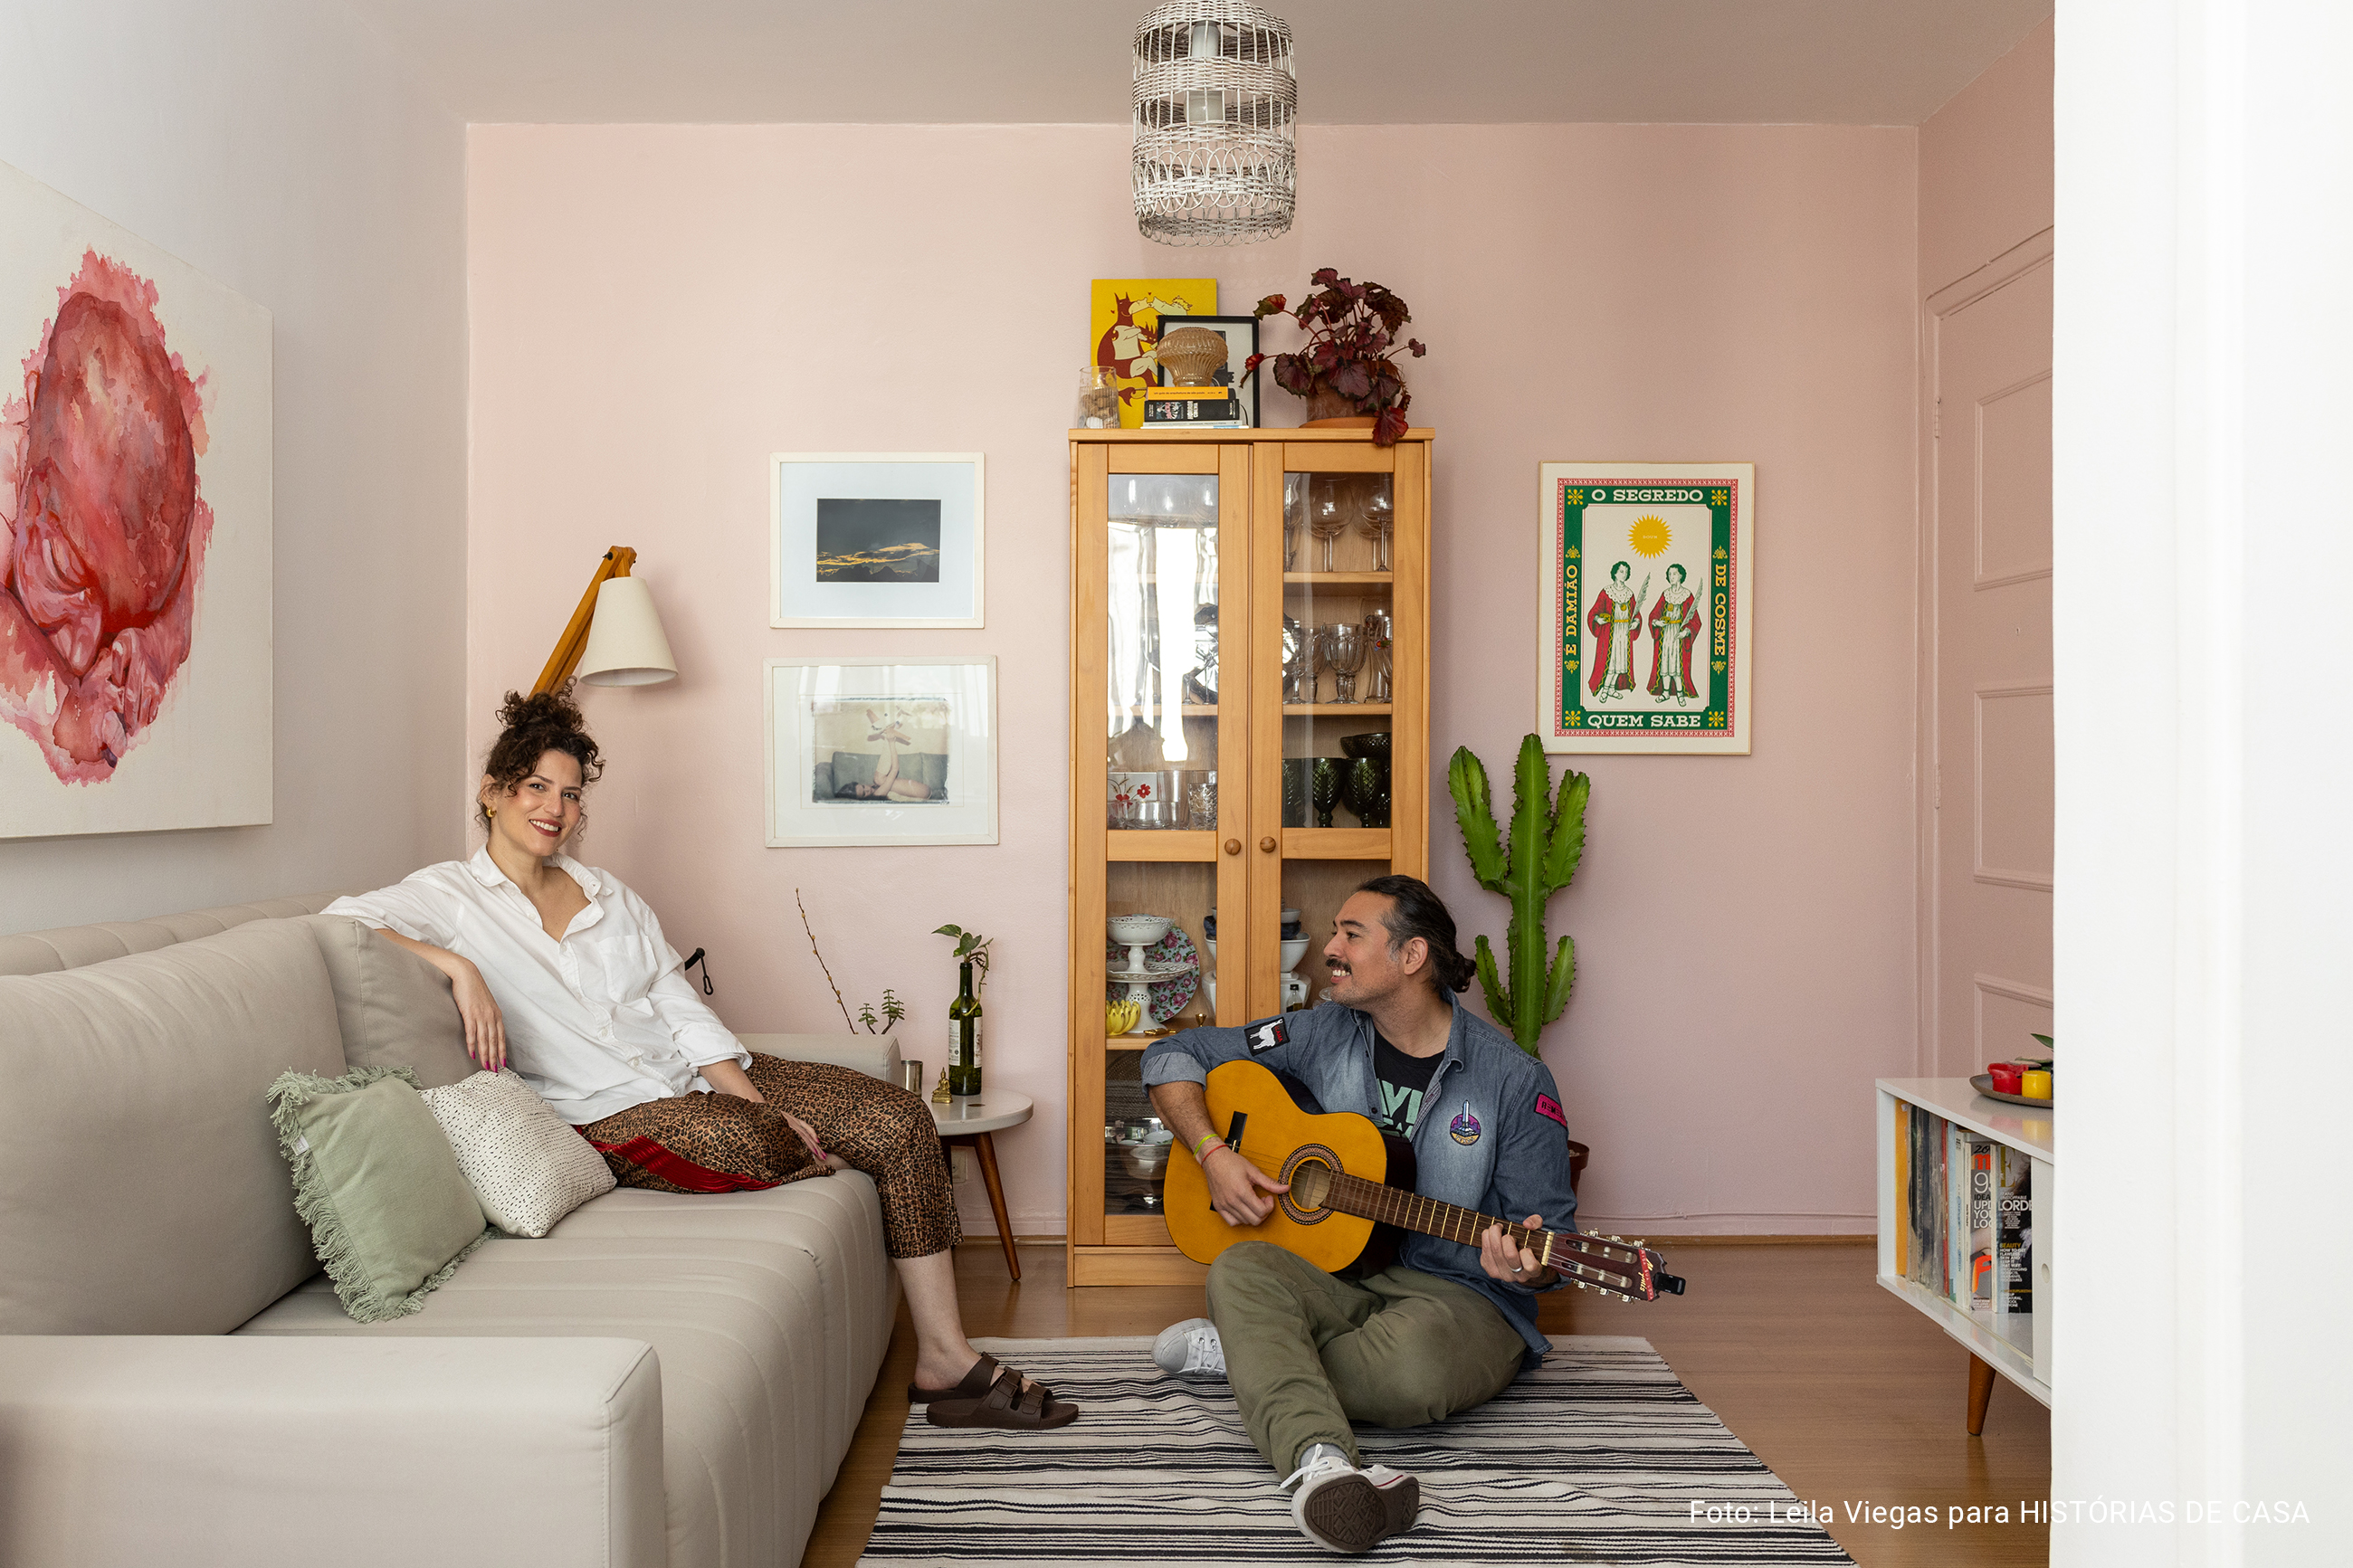 Sala de estar com paredes coloridas e decoração acolhedora